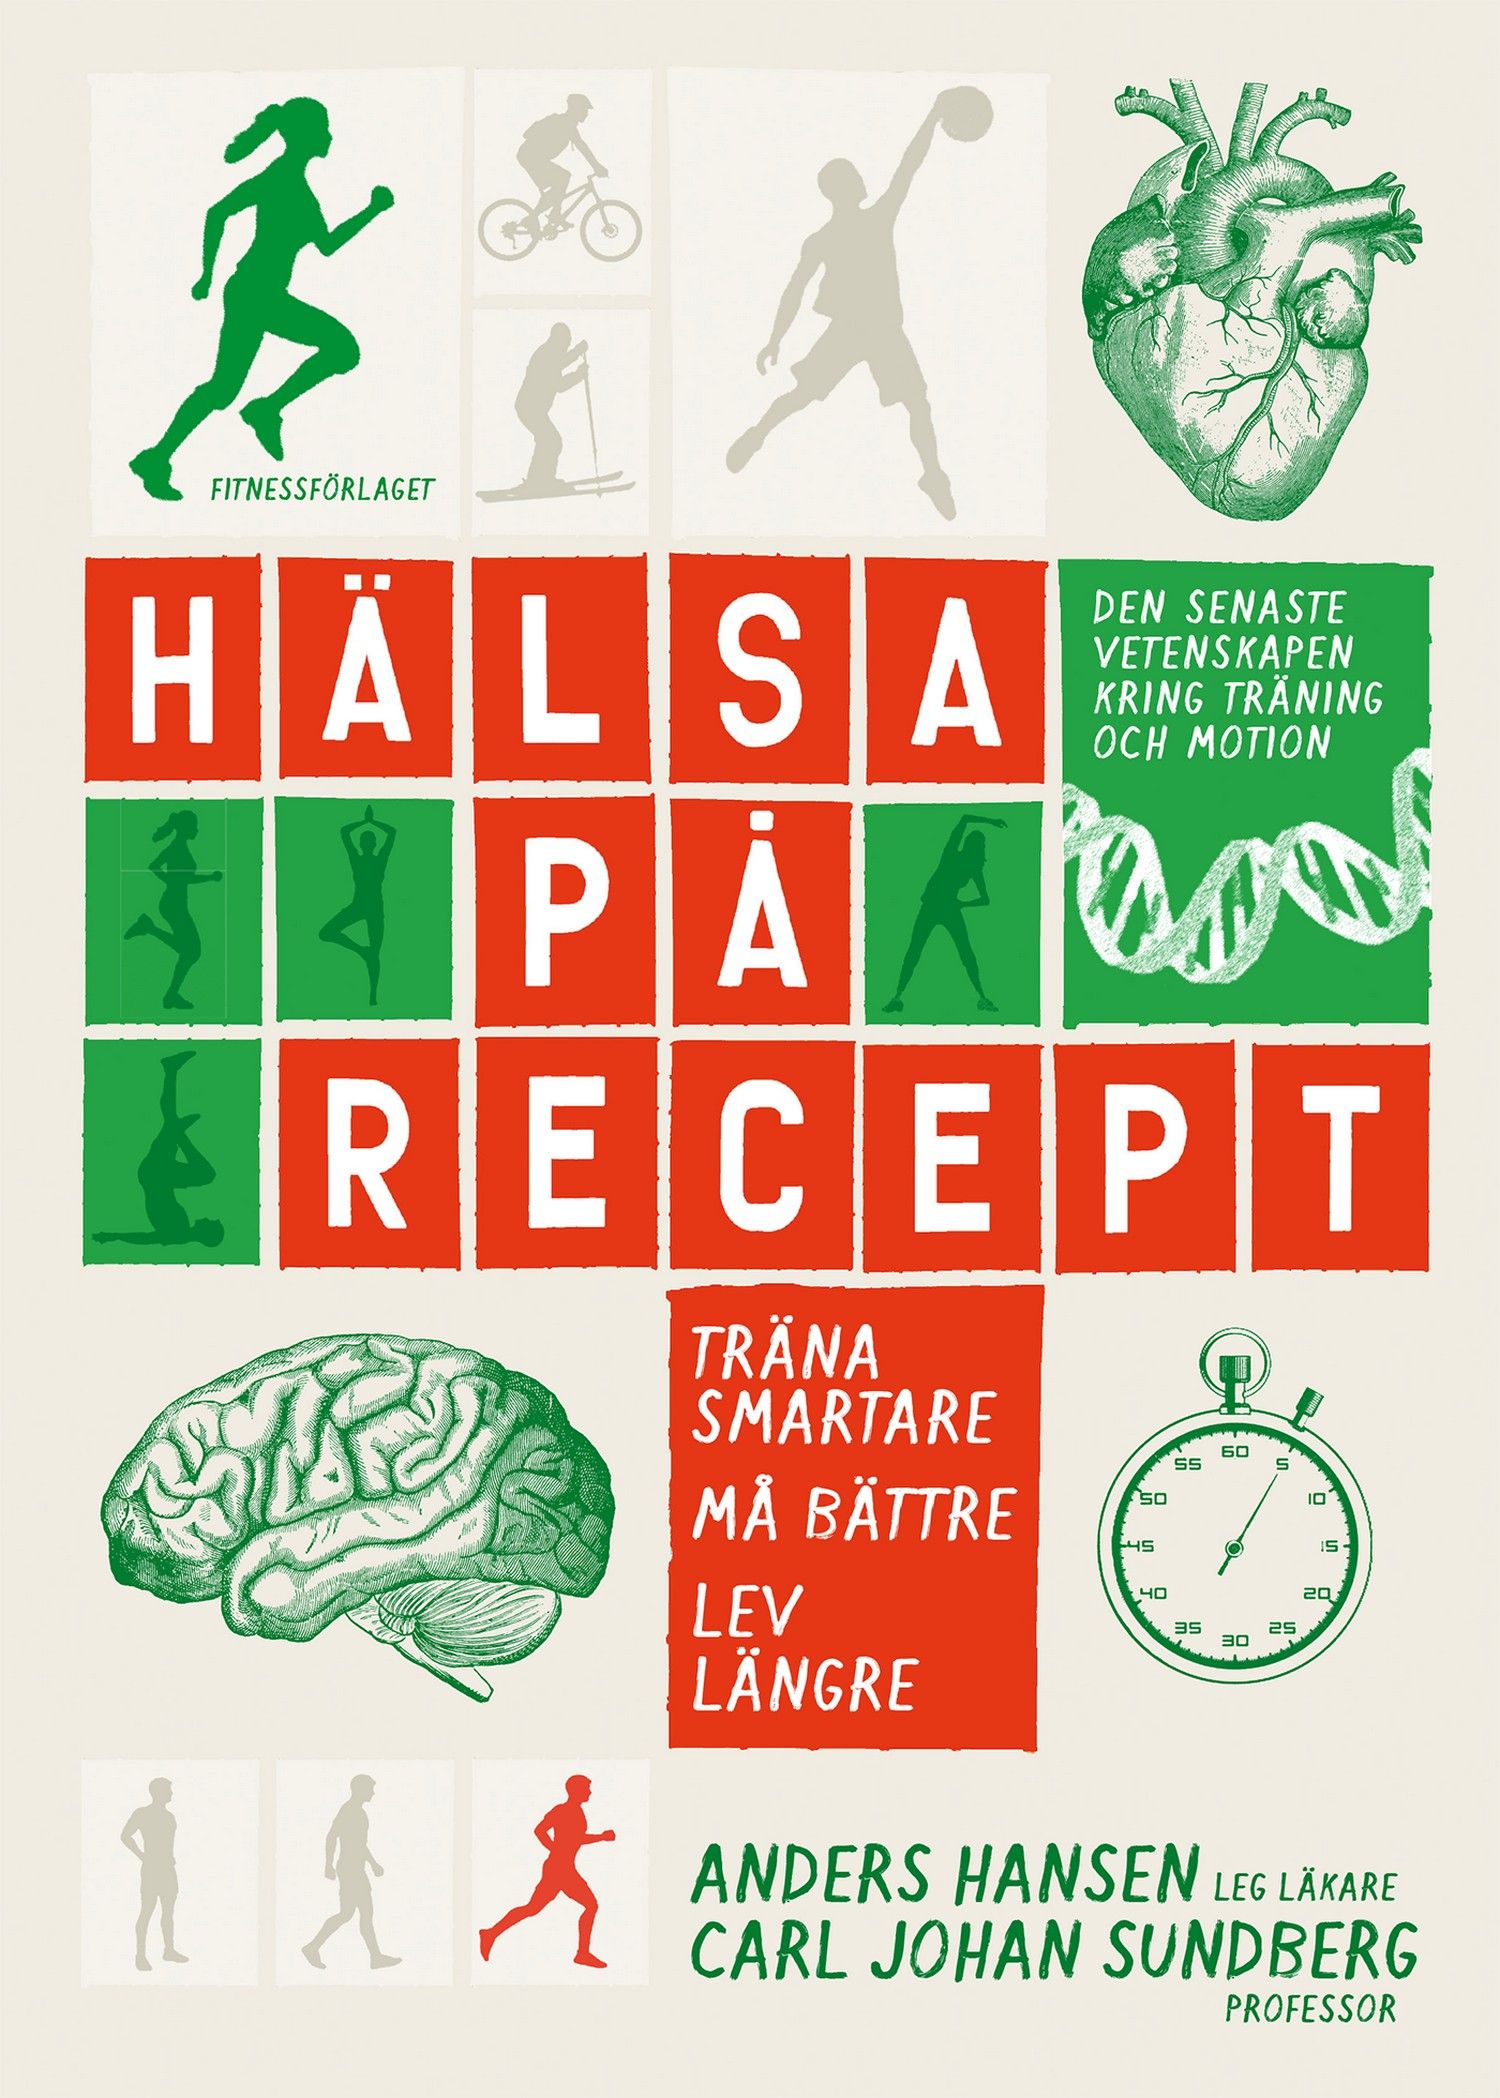 Hälsa på recept : träna smartare, må bättre, lev längre, e-bog af Anders Hansen, Carl Johan Sundberg